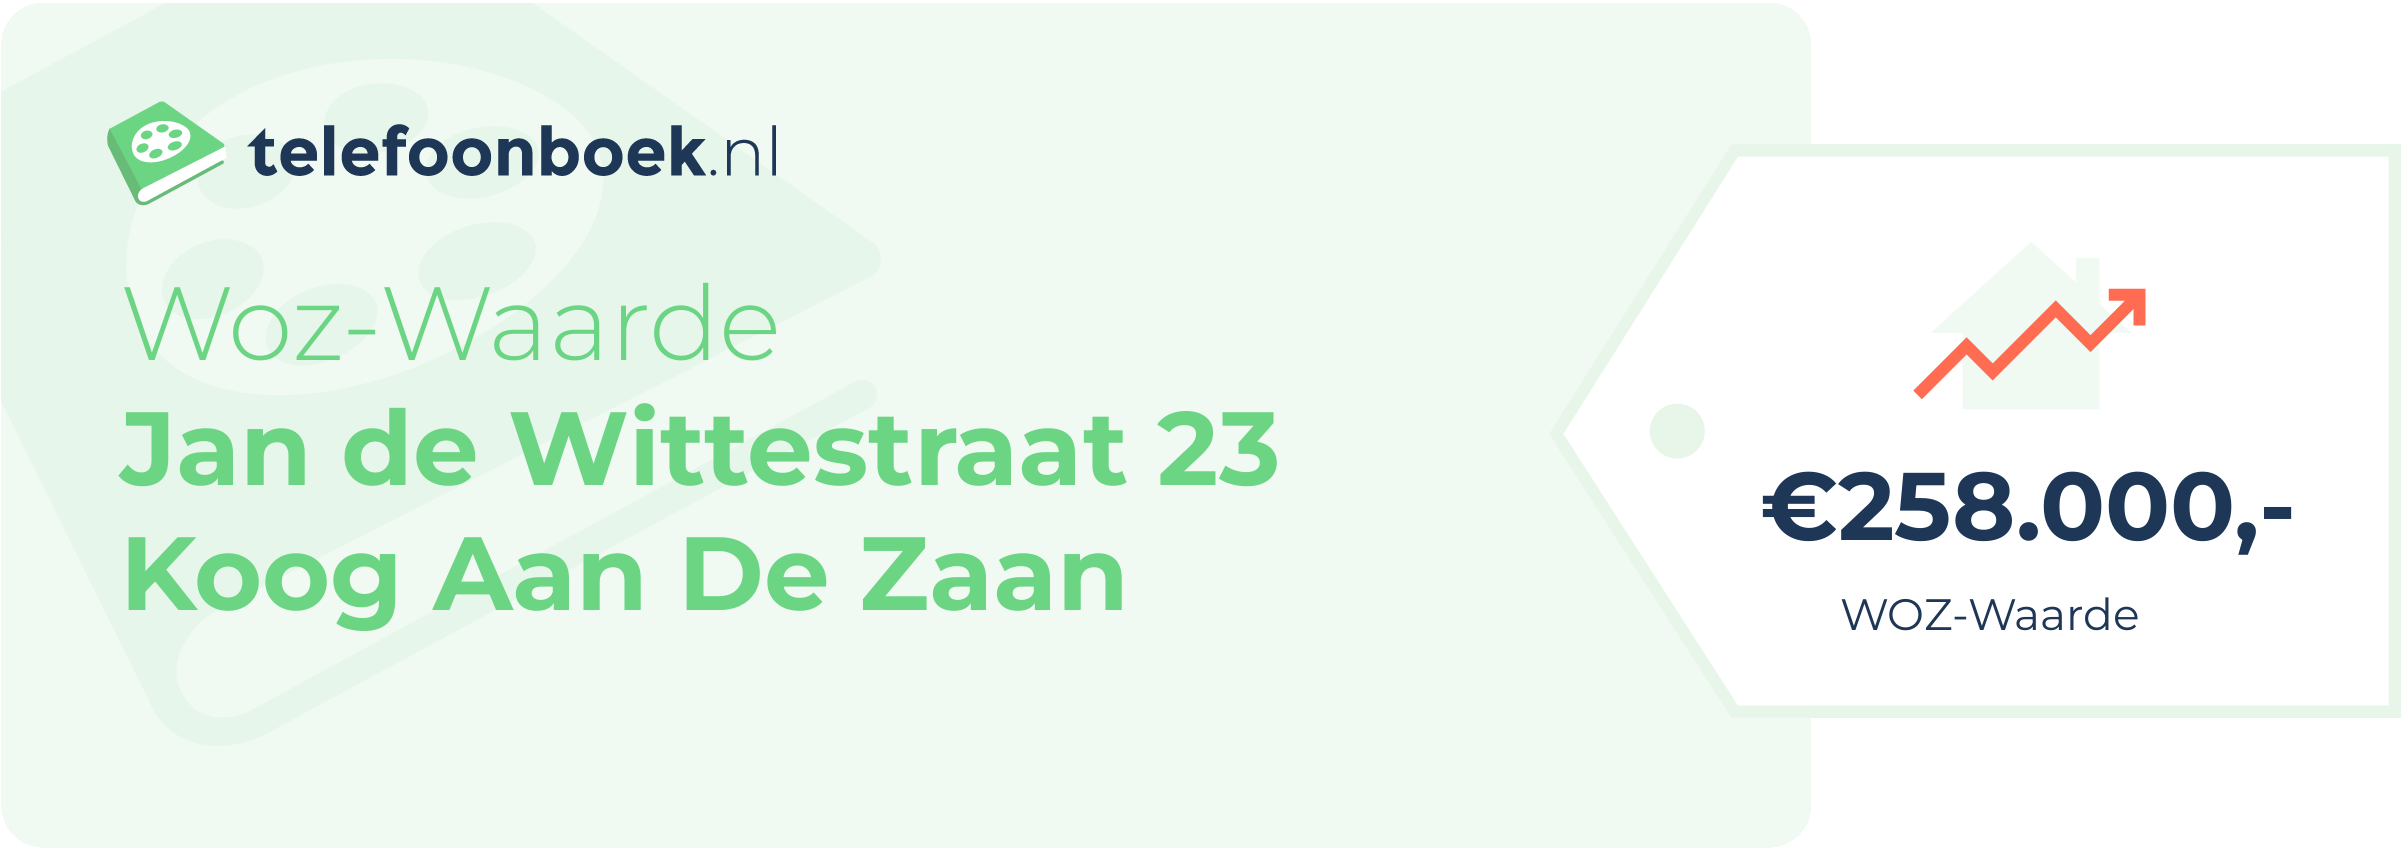 WOZ-waarde Jan De Wittestraat 23 Koog Aan De Zaan